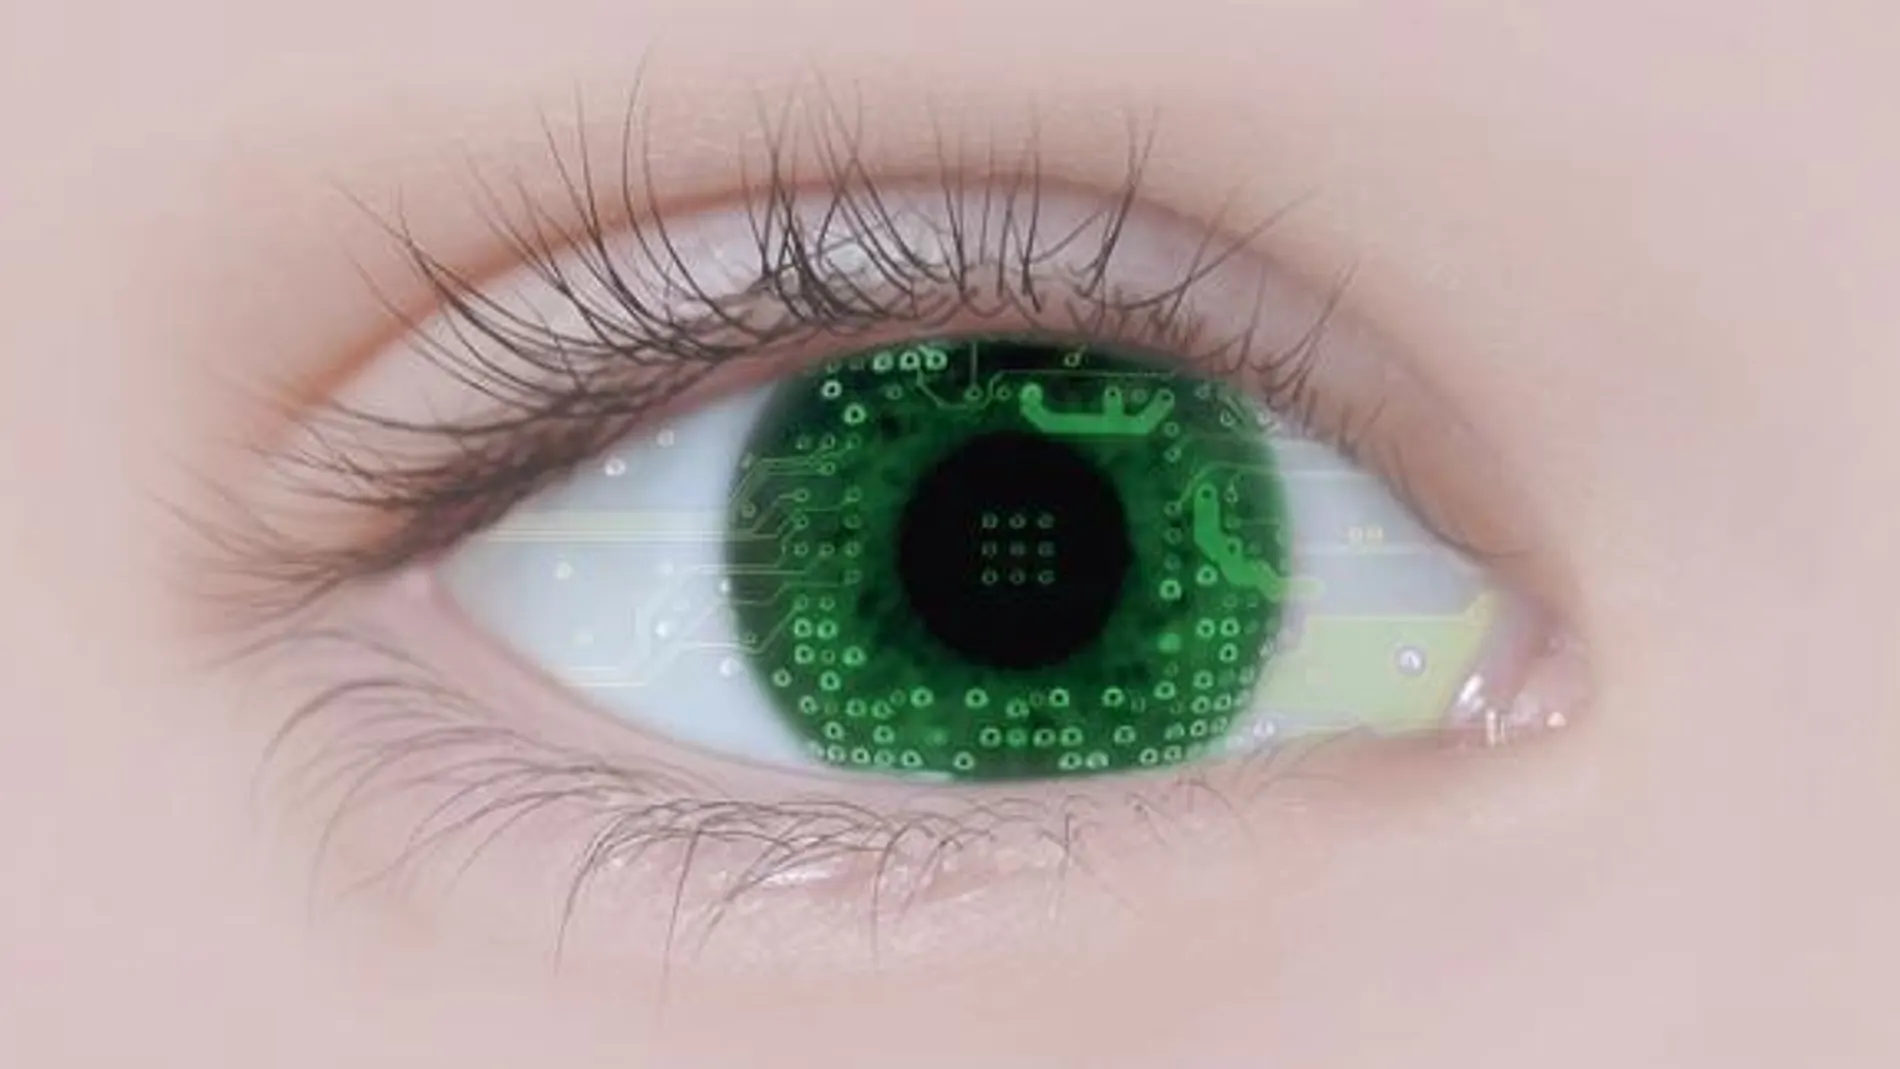 La biometría supone nuevos riesgos y retos asociados a la privacidad e intimidad